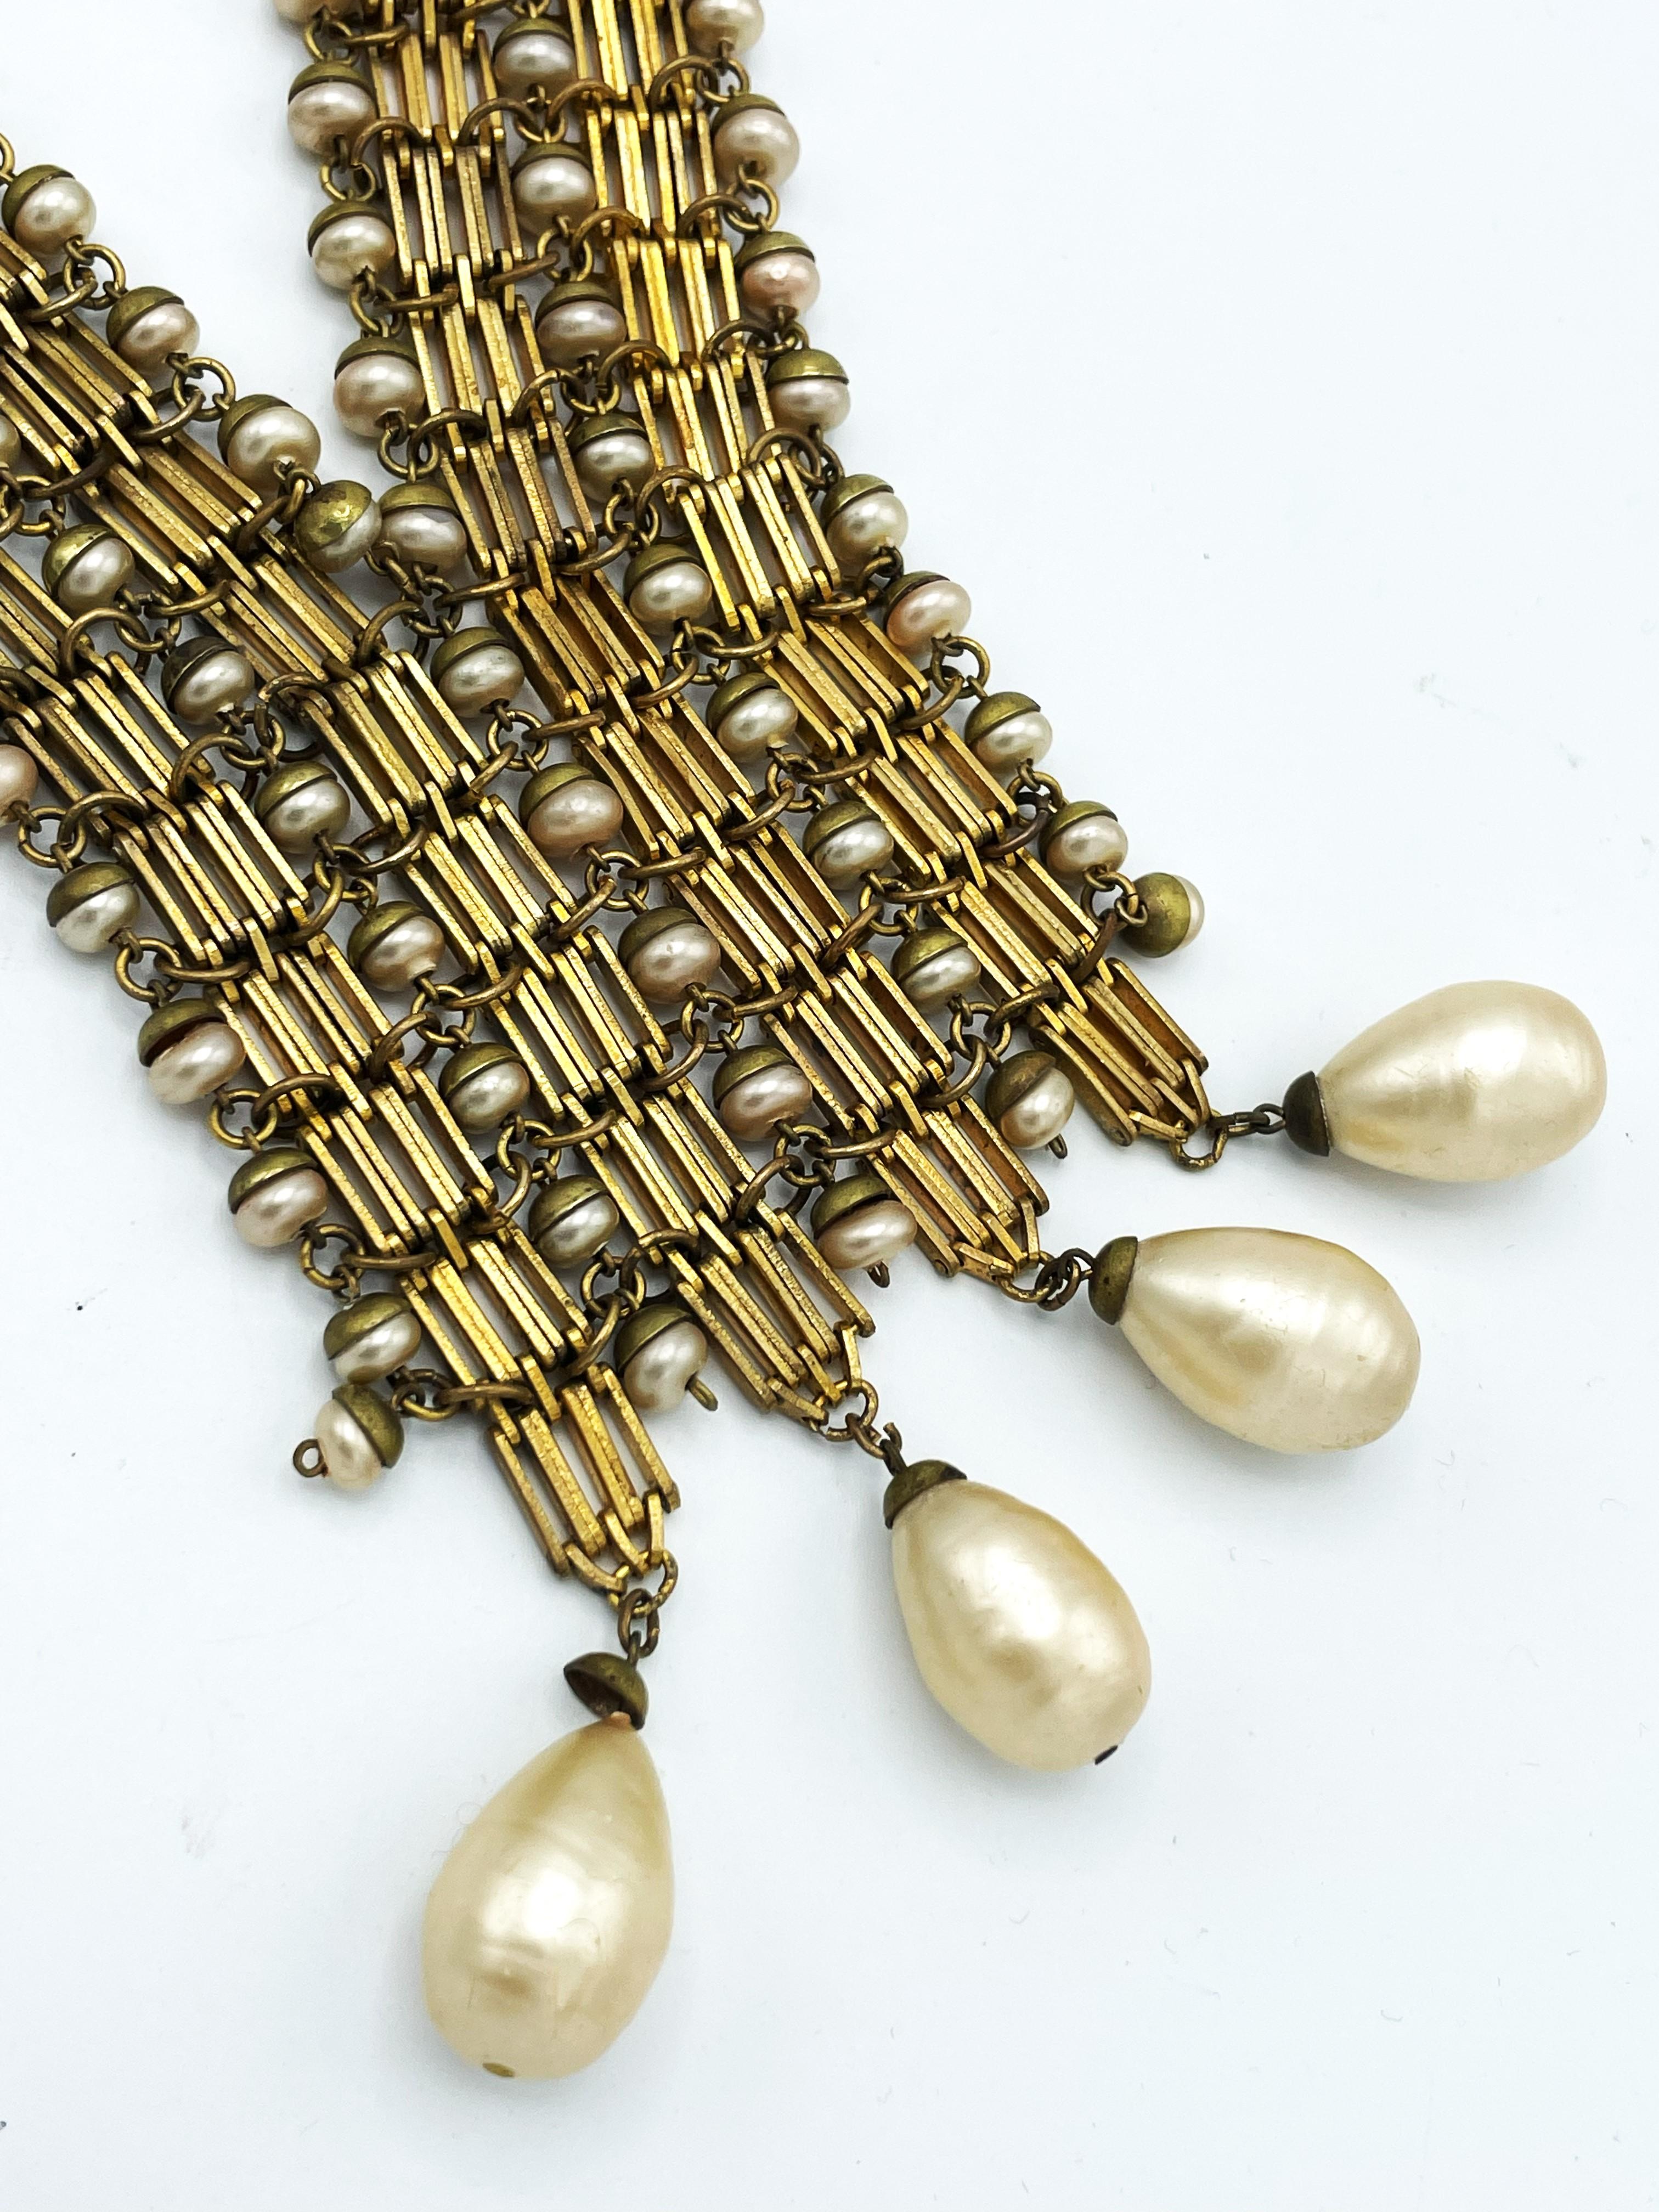 Collier en forme de V, fabriqué en France au début des années 1940, plaqué or et belles perles faites à la main.
2 brins individuels plaqués or de 3,5 cm de large chacun, bordés de petites perles. 
Les 6 cm inférieurs sont reliés entre eux, ce qui